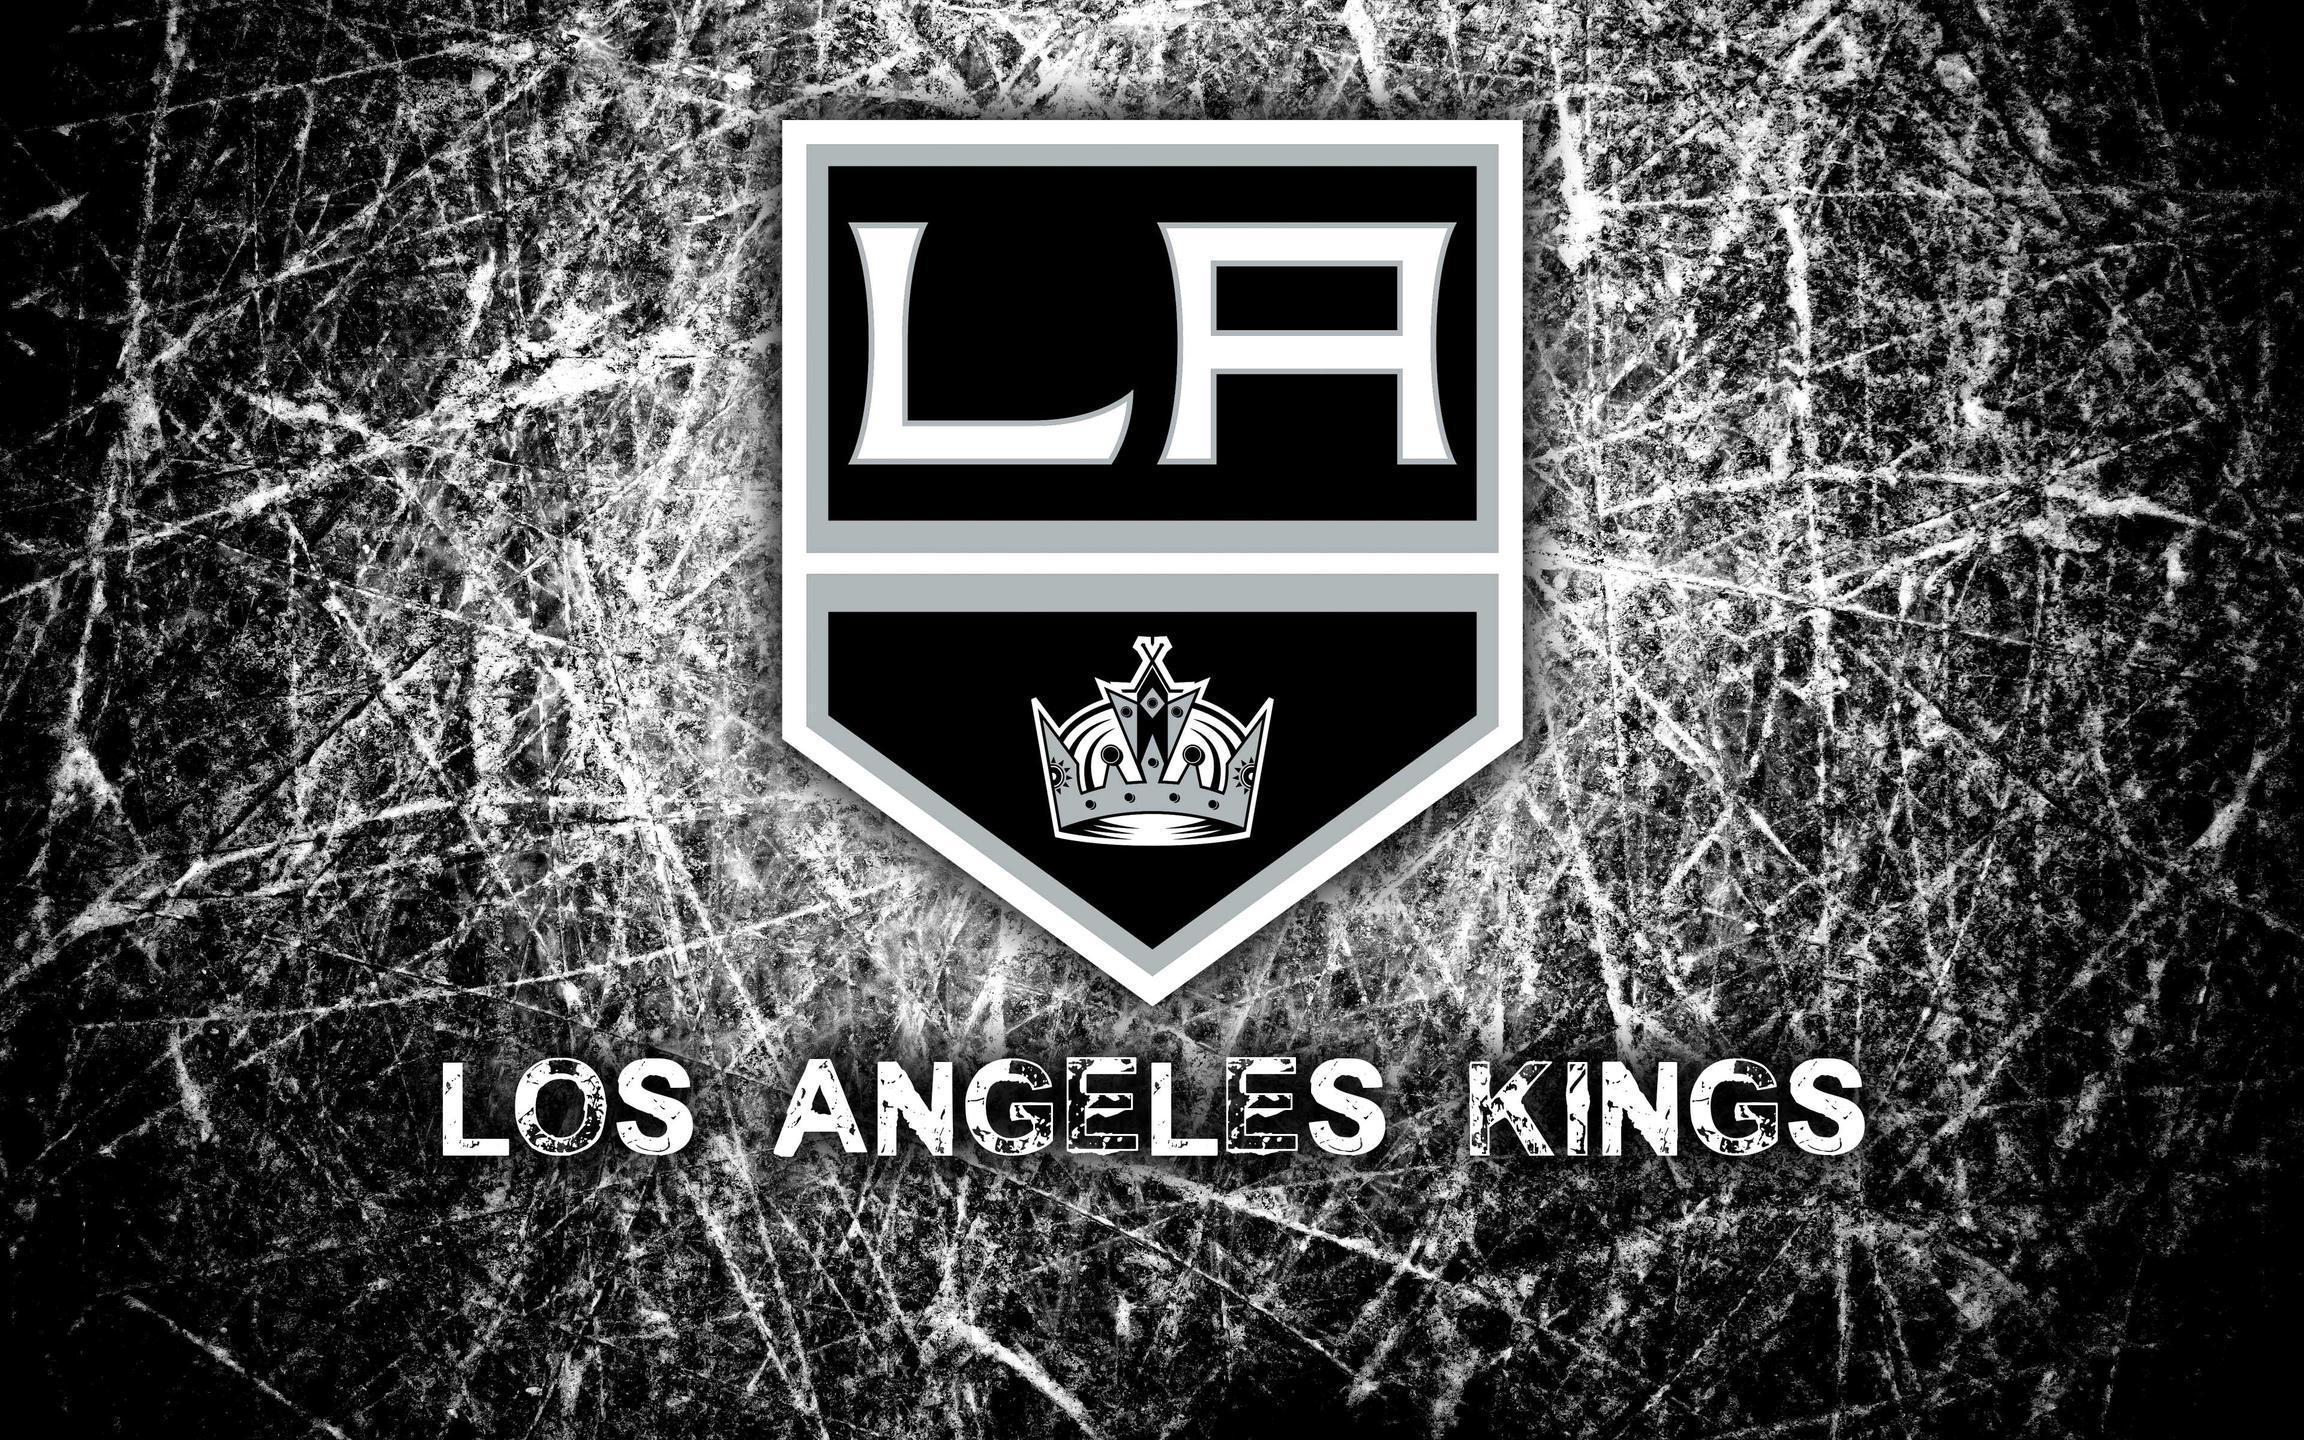 Los Angeles Kings 2014 Logo Wallpapers Wide or HD